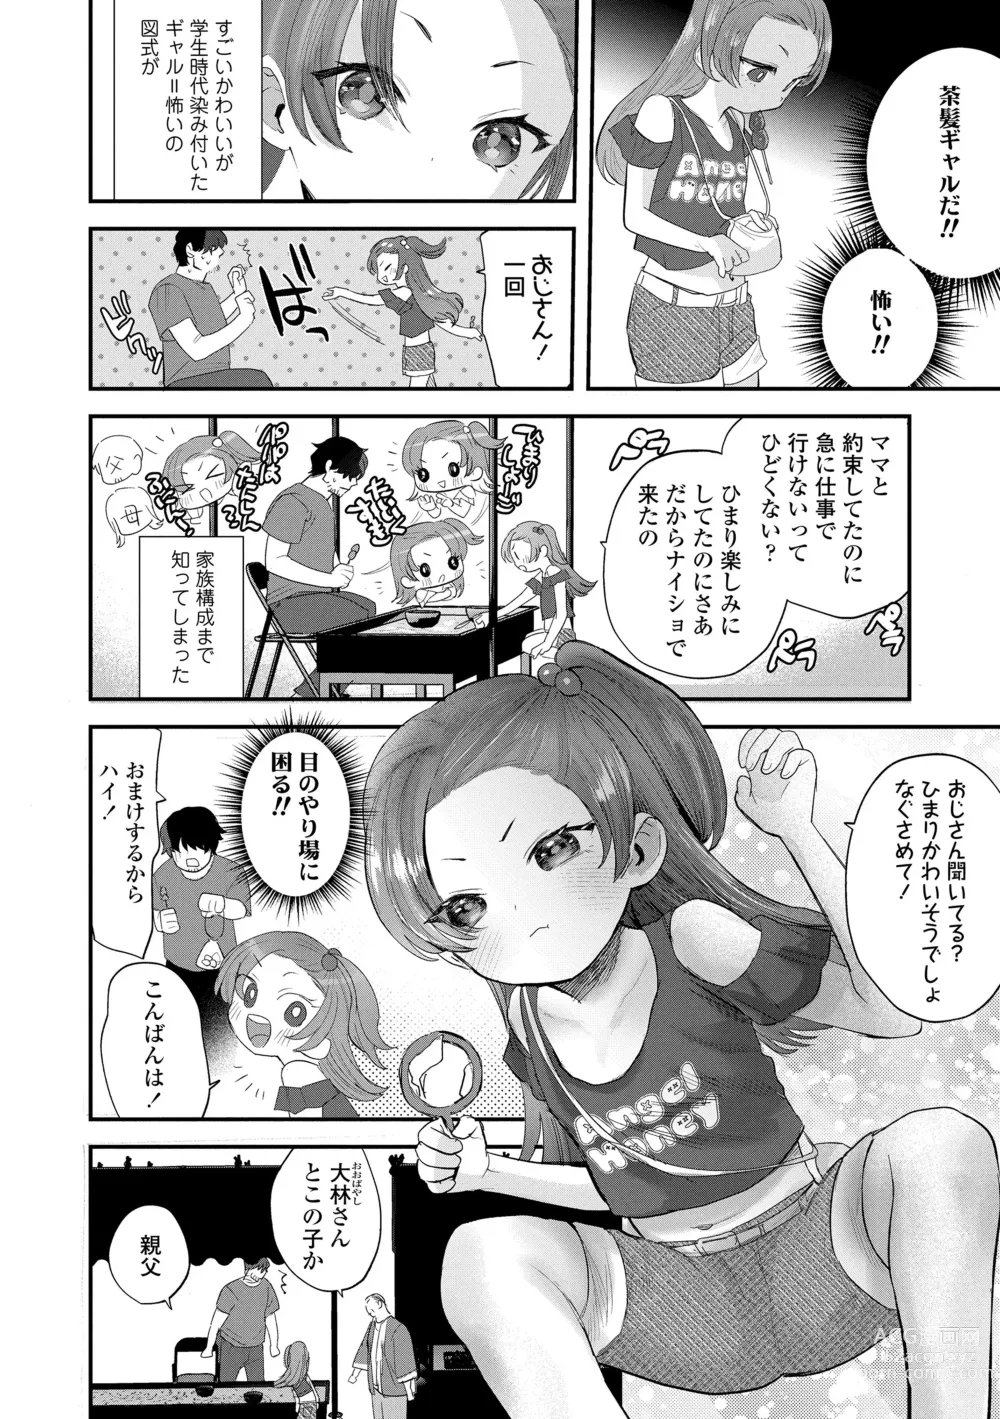 Page 6 of manga Chisanakonokoi